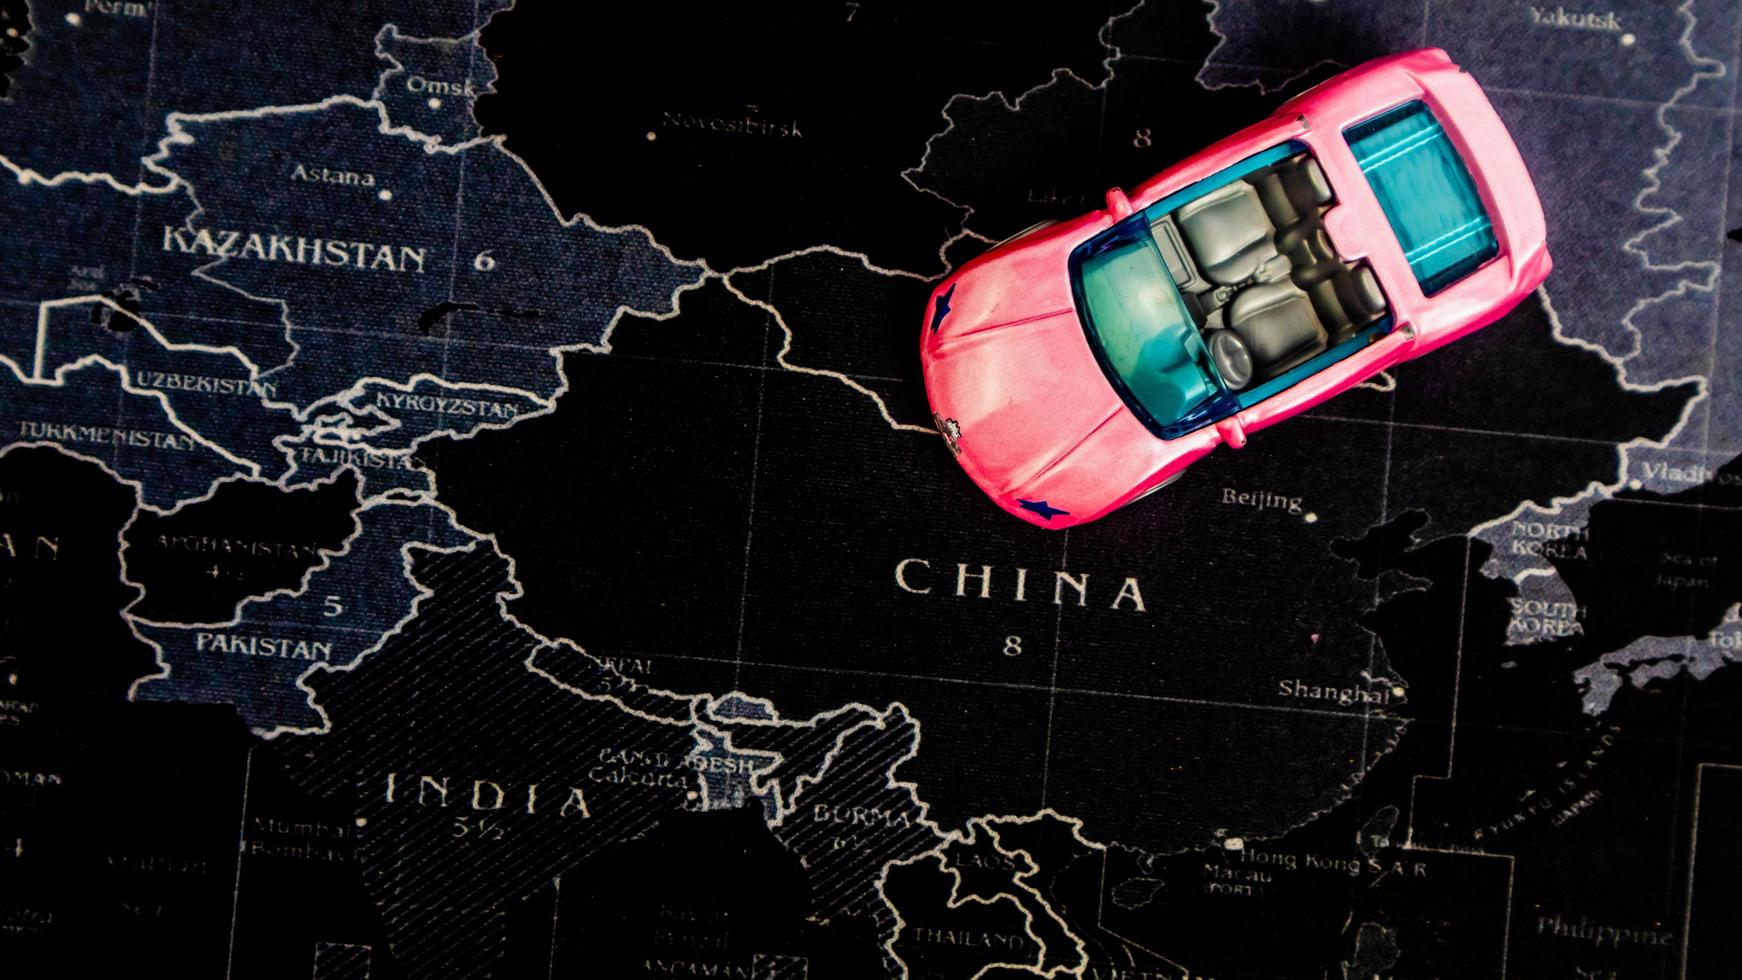 minahasa, indonesien dezember 2022, rosa spielzeugauto über karte foto